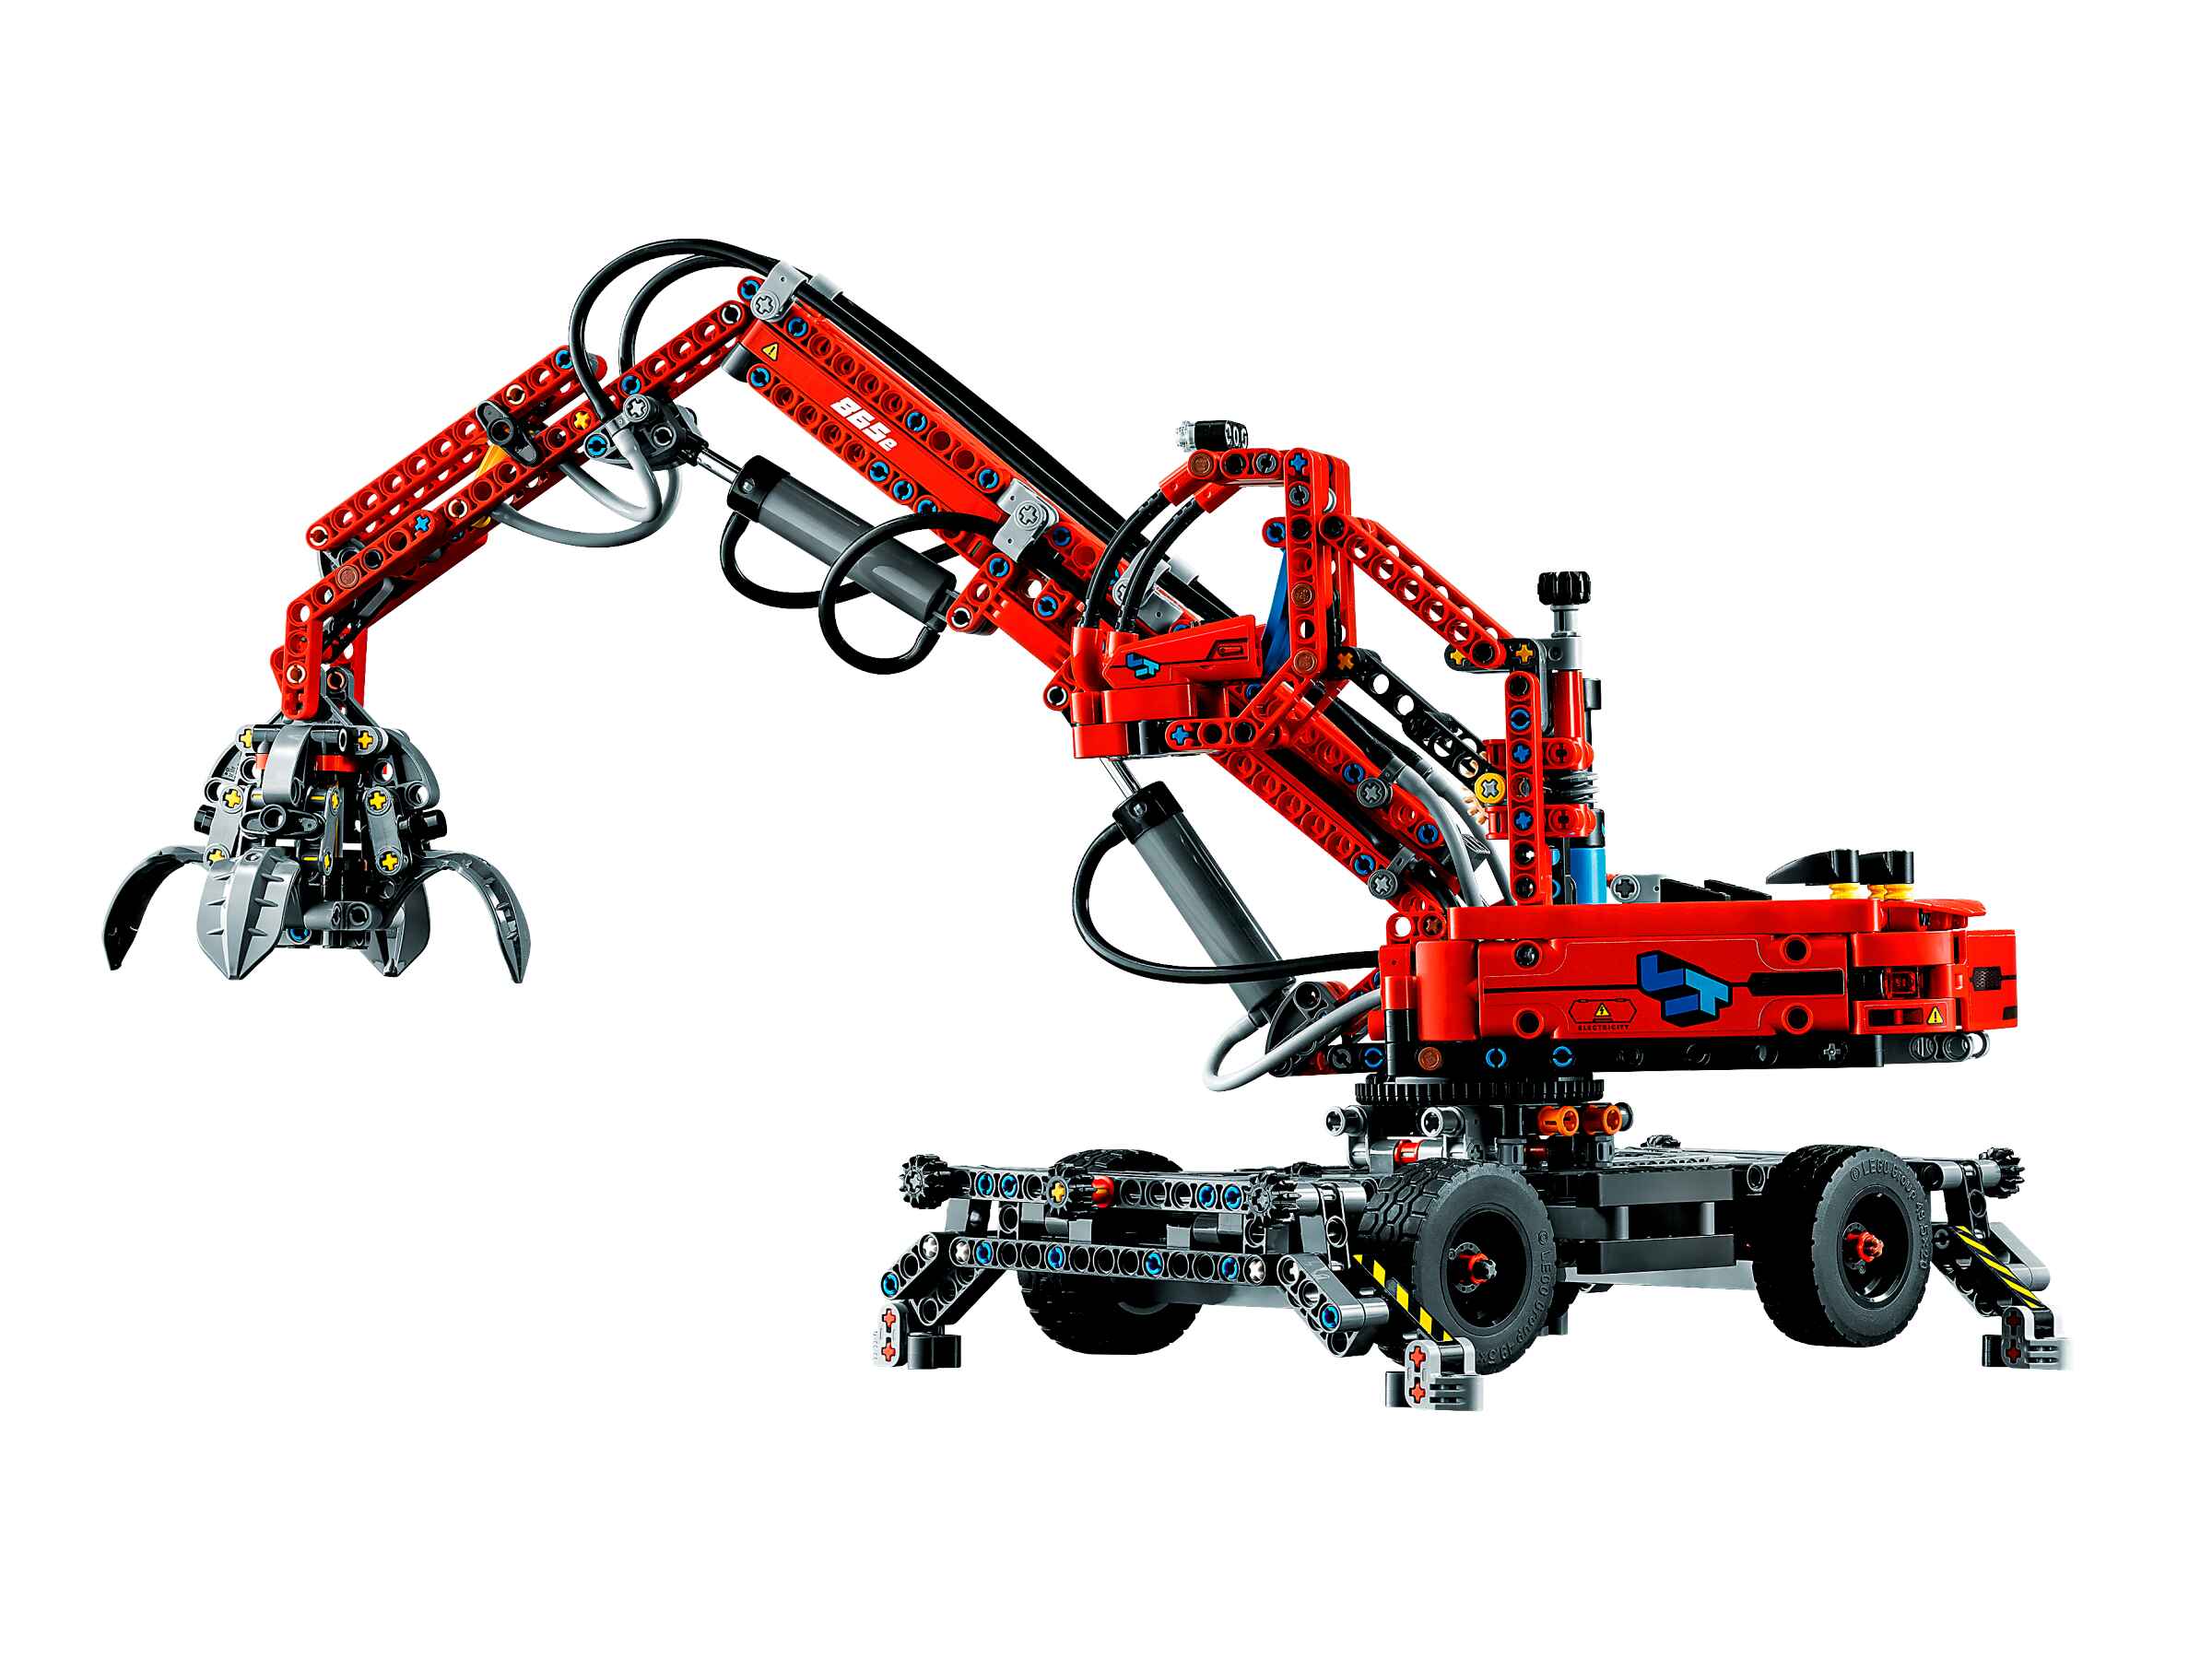 LEGO 42144 Technic Umschlagbagger Modell, Mechanisches Spielzeug Set